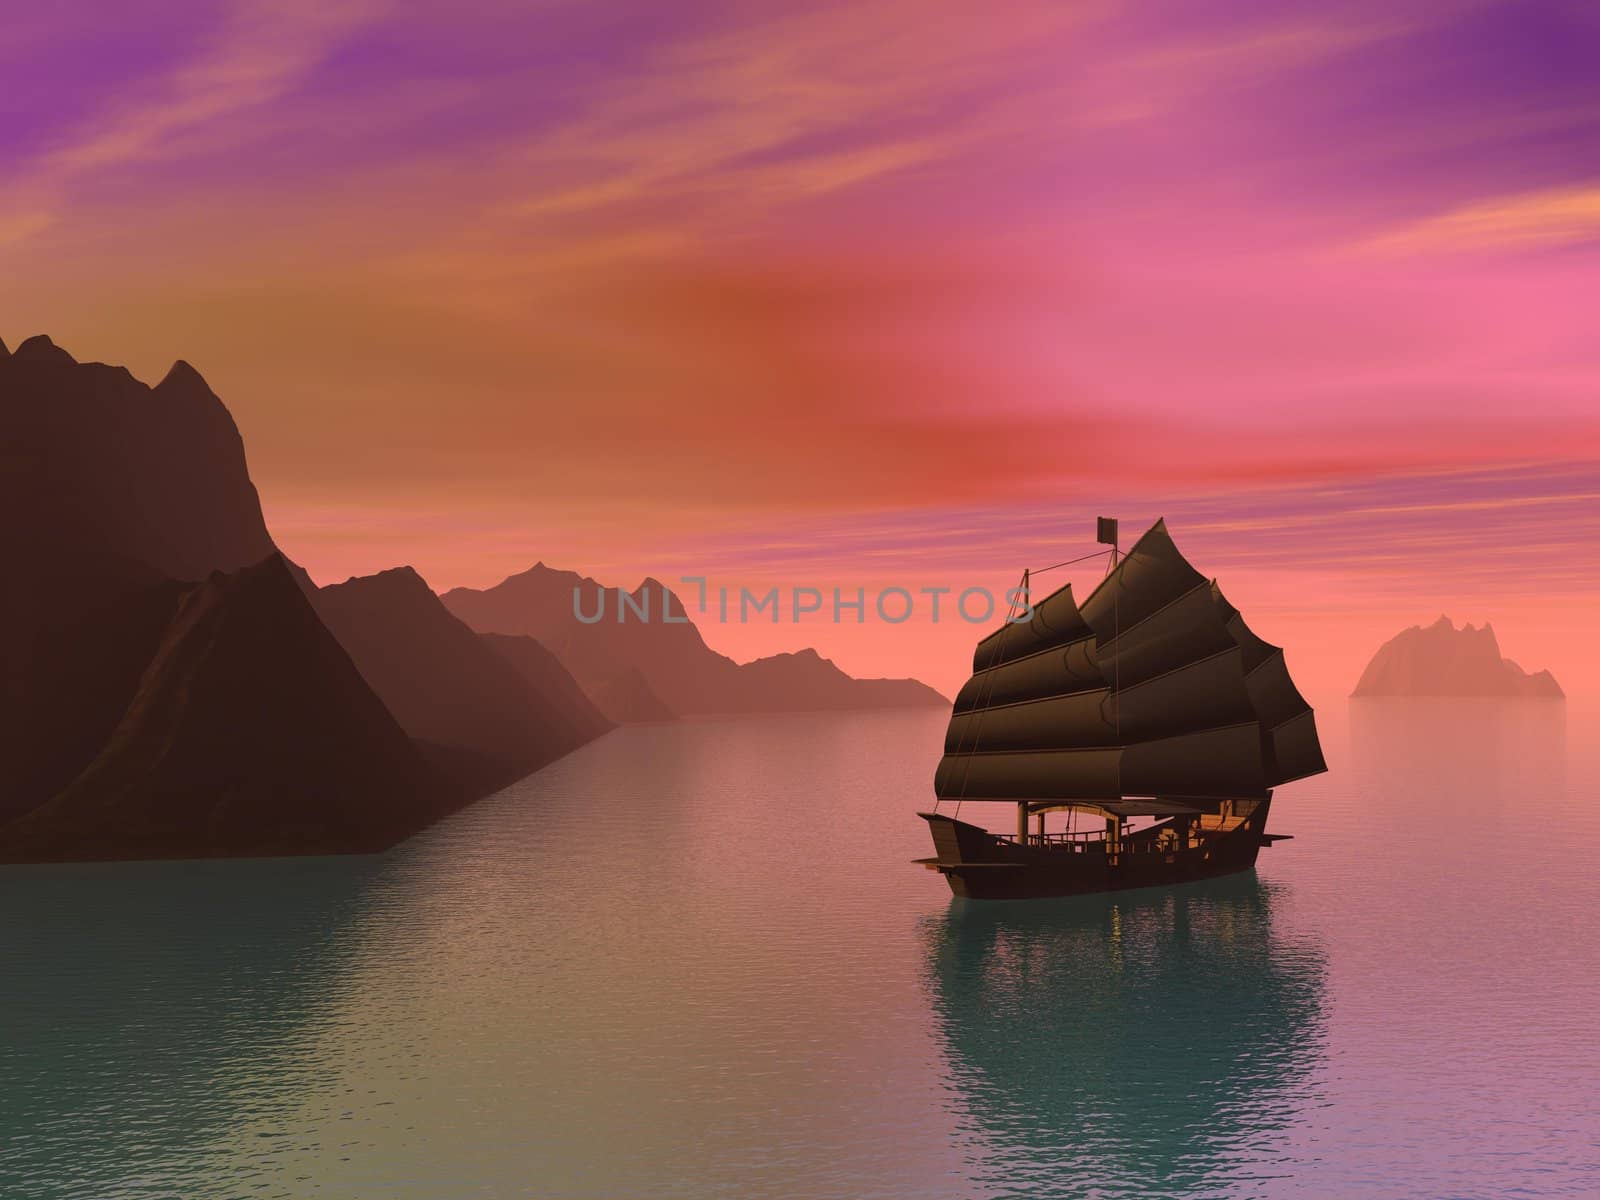 Oriental junk boat - 3D render by Elenaphotos21